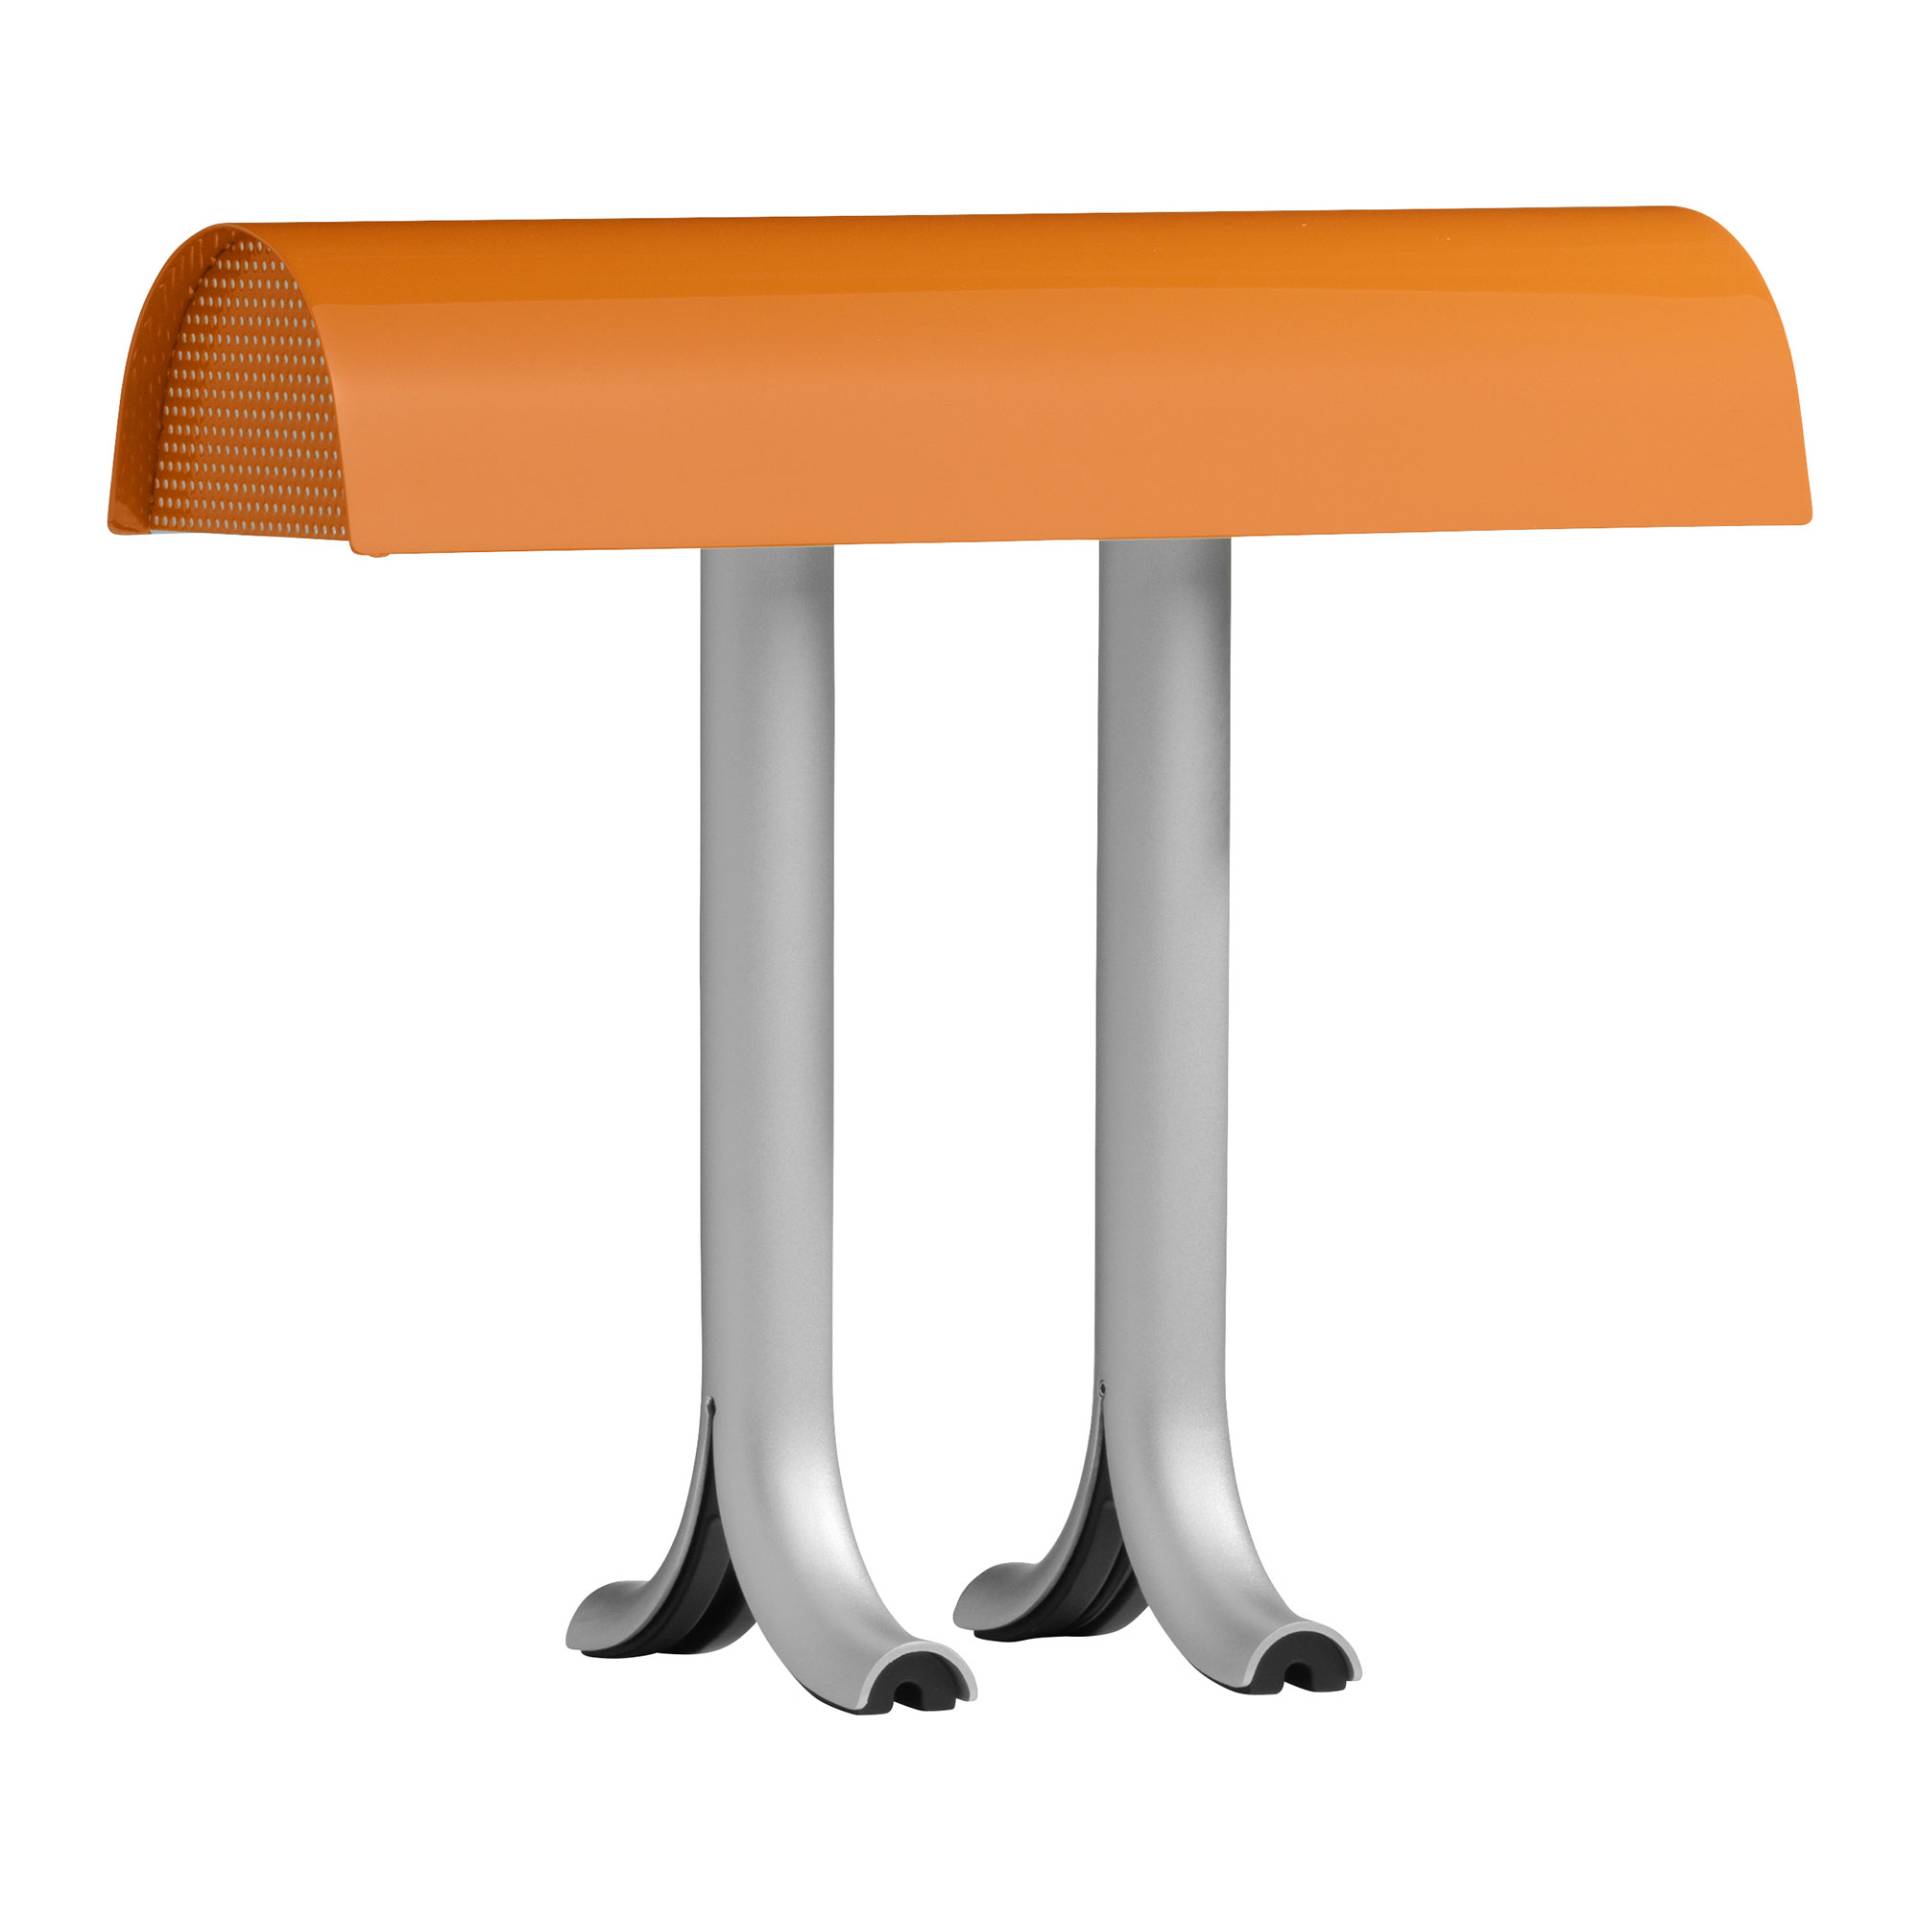 HAY - Anagram Tischleuchte - charred orange/glänzend nasslackiert/BxHxT 36,5x32,5x14cm/mit Schalter/ fassung 2x E14 max. 8W von HAY